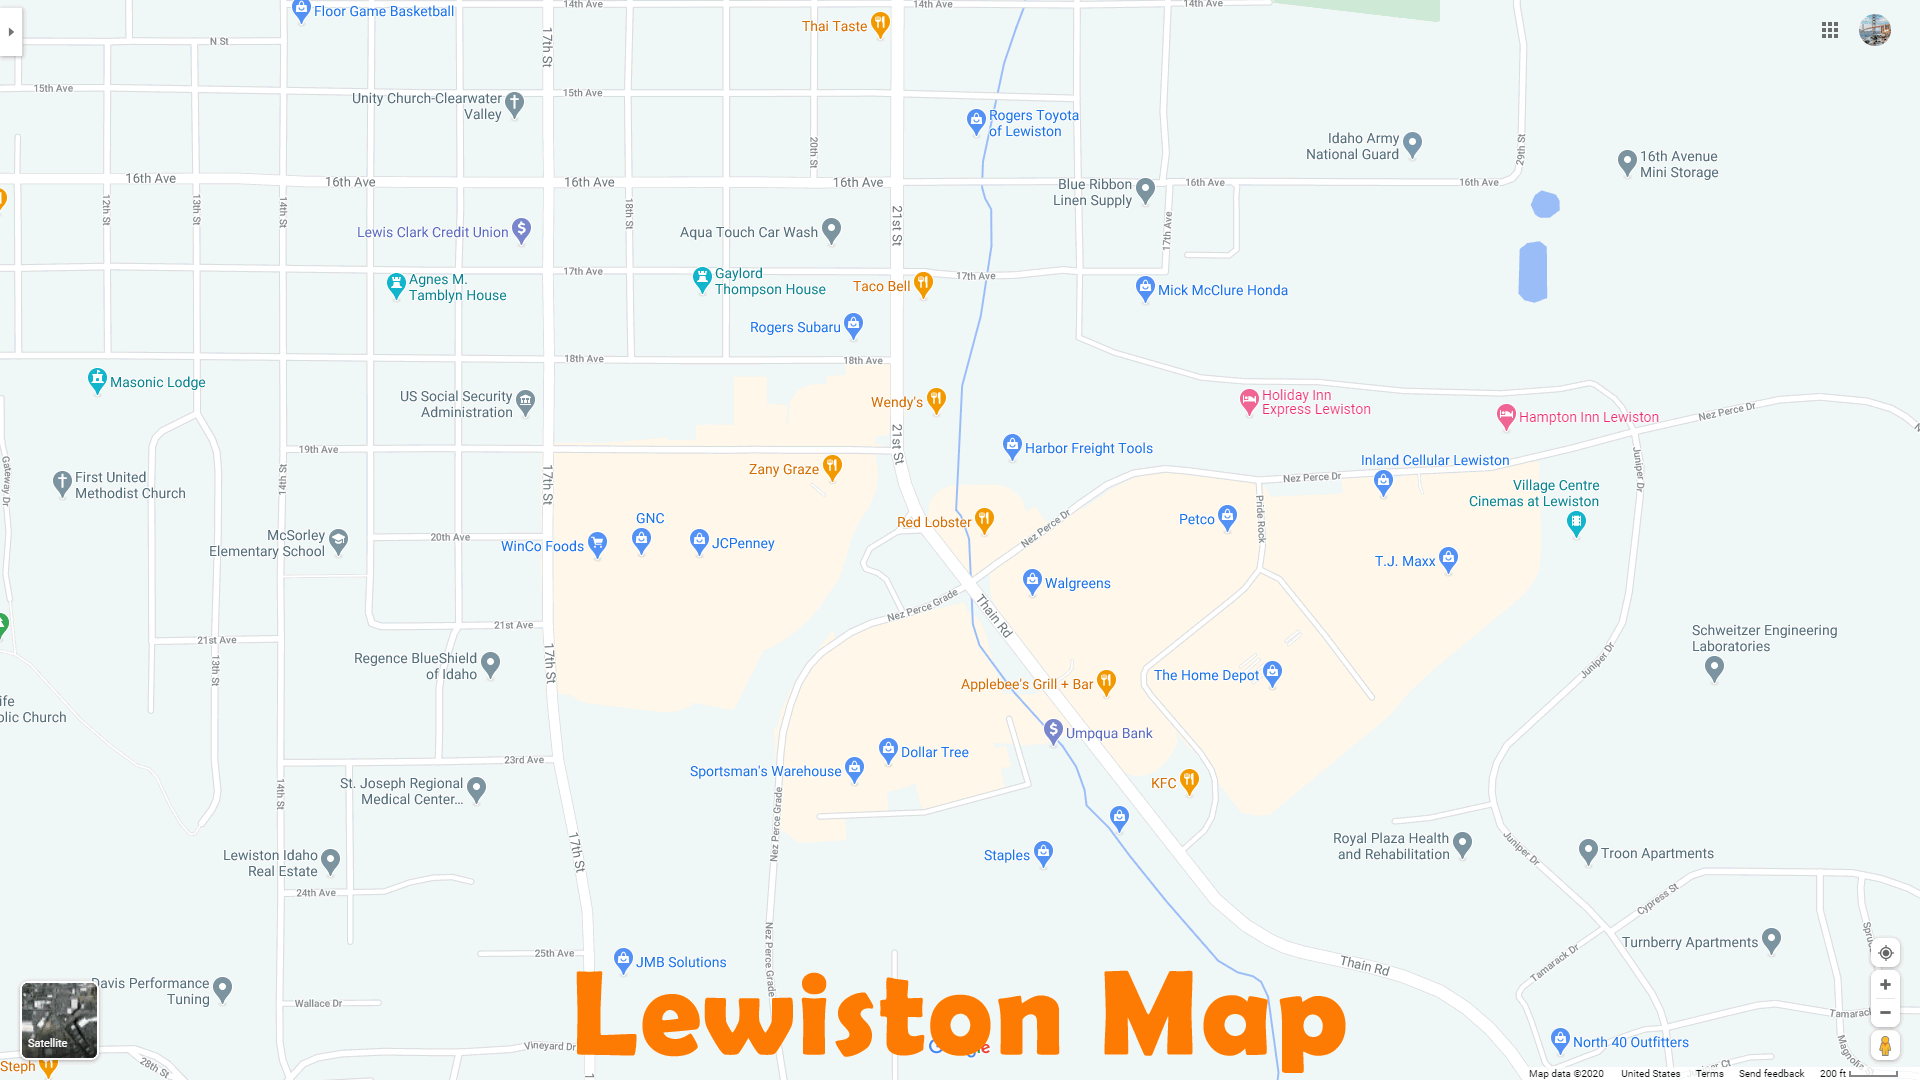 Lewiston plan